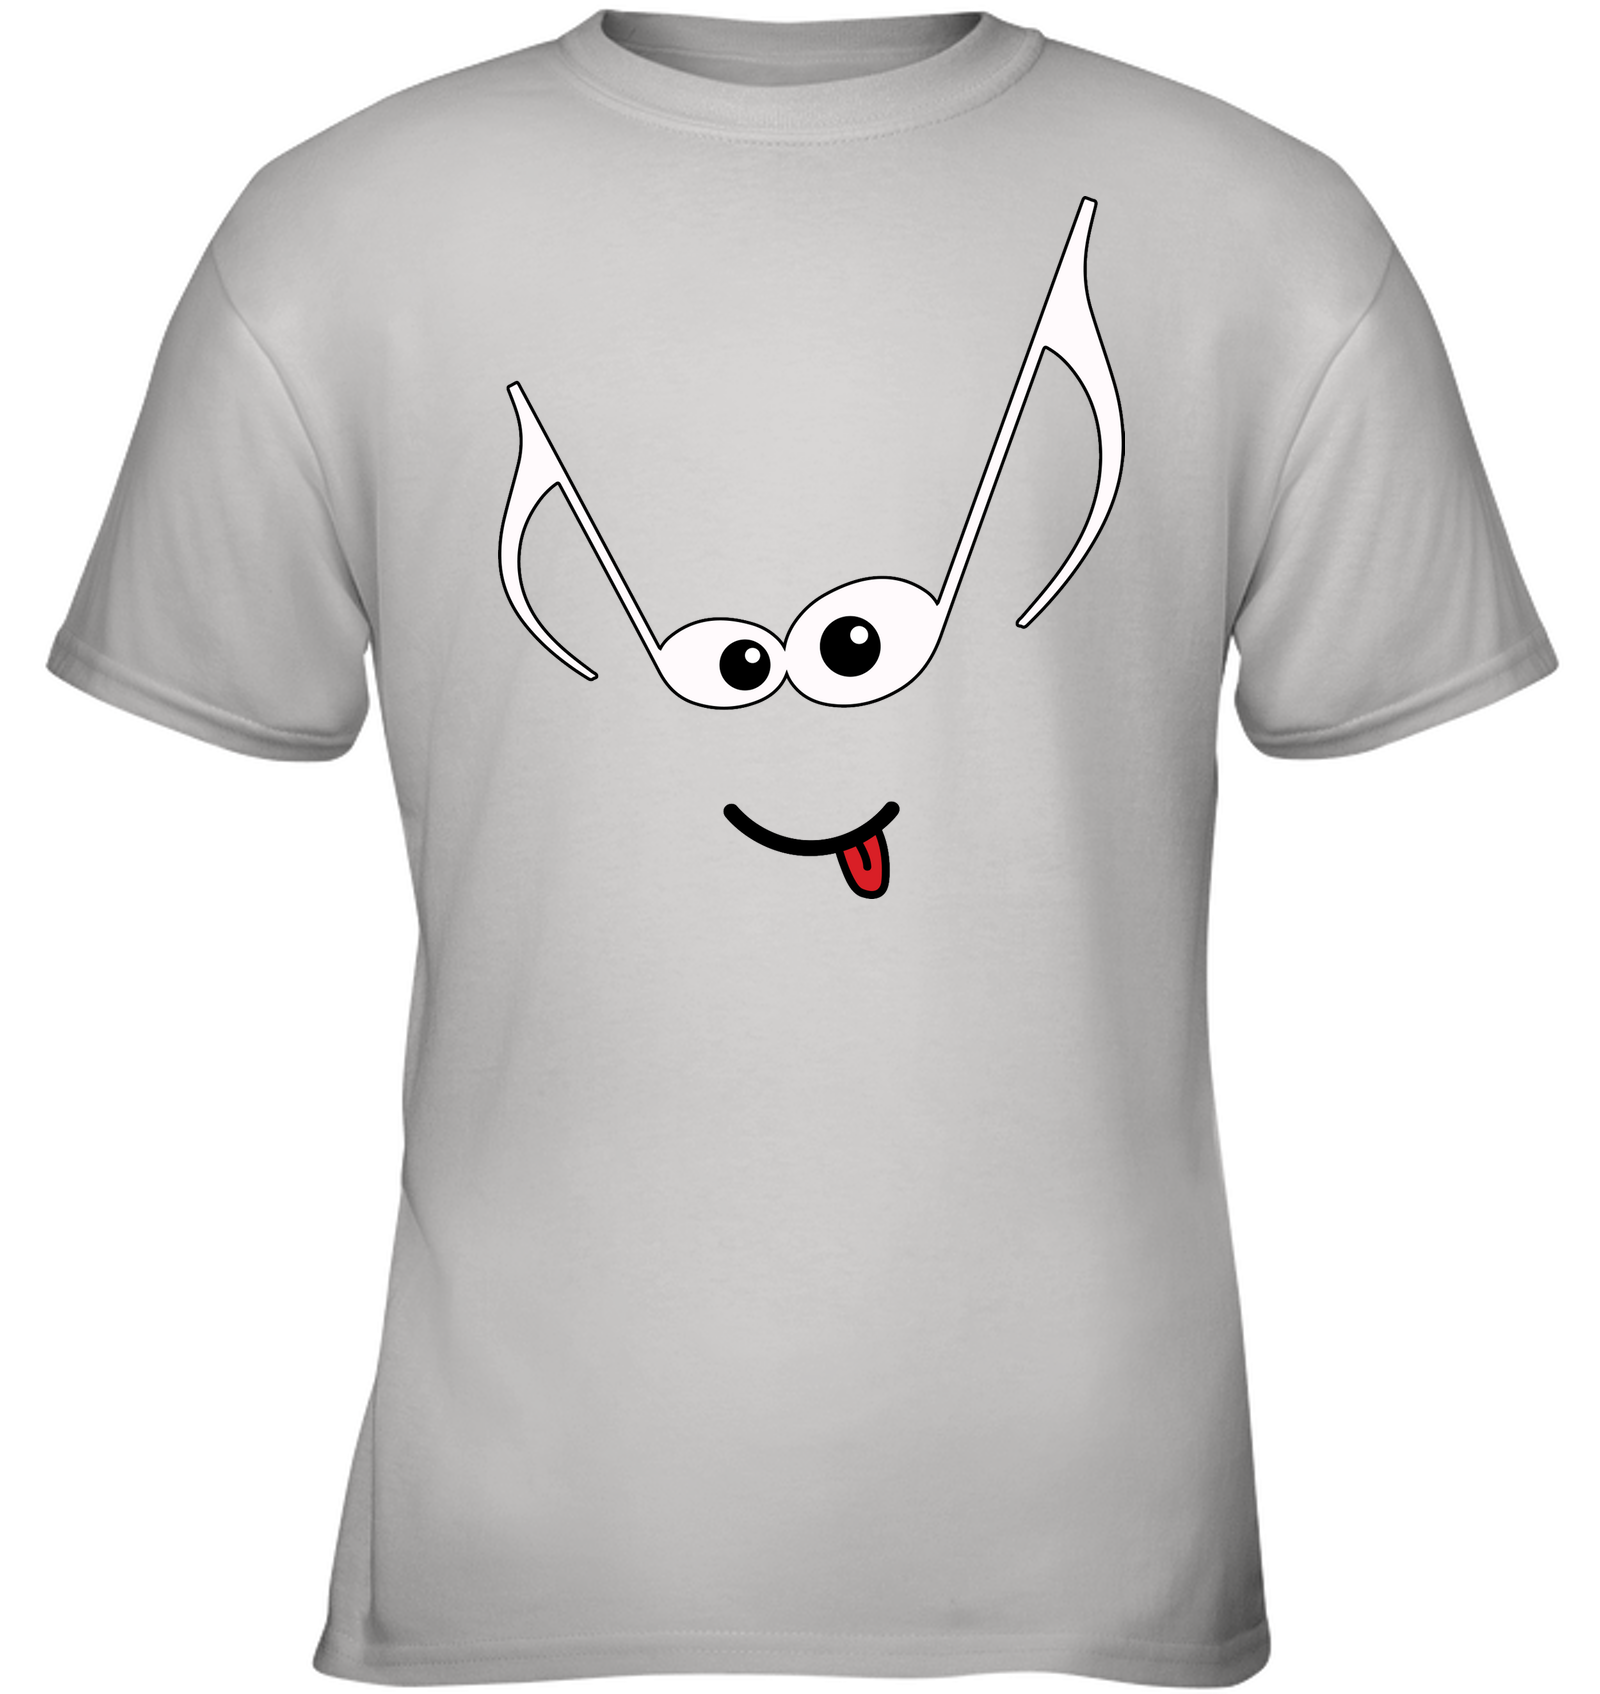 Mischievous Note Face - Gildan Youth Short Sleeve T-Shirt